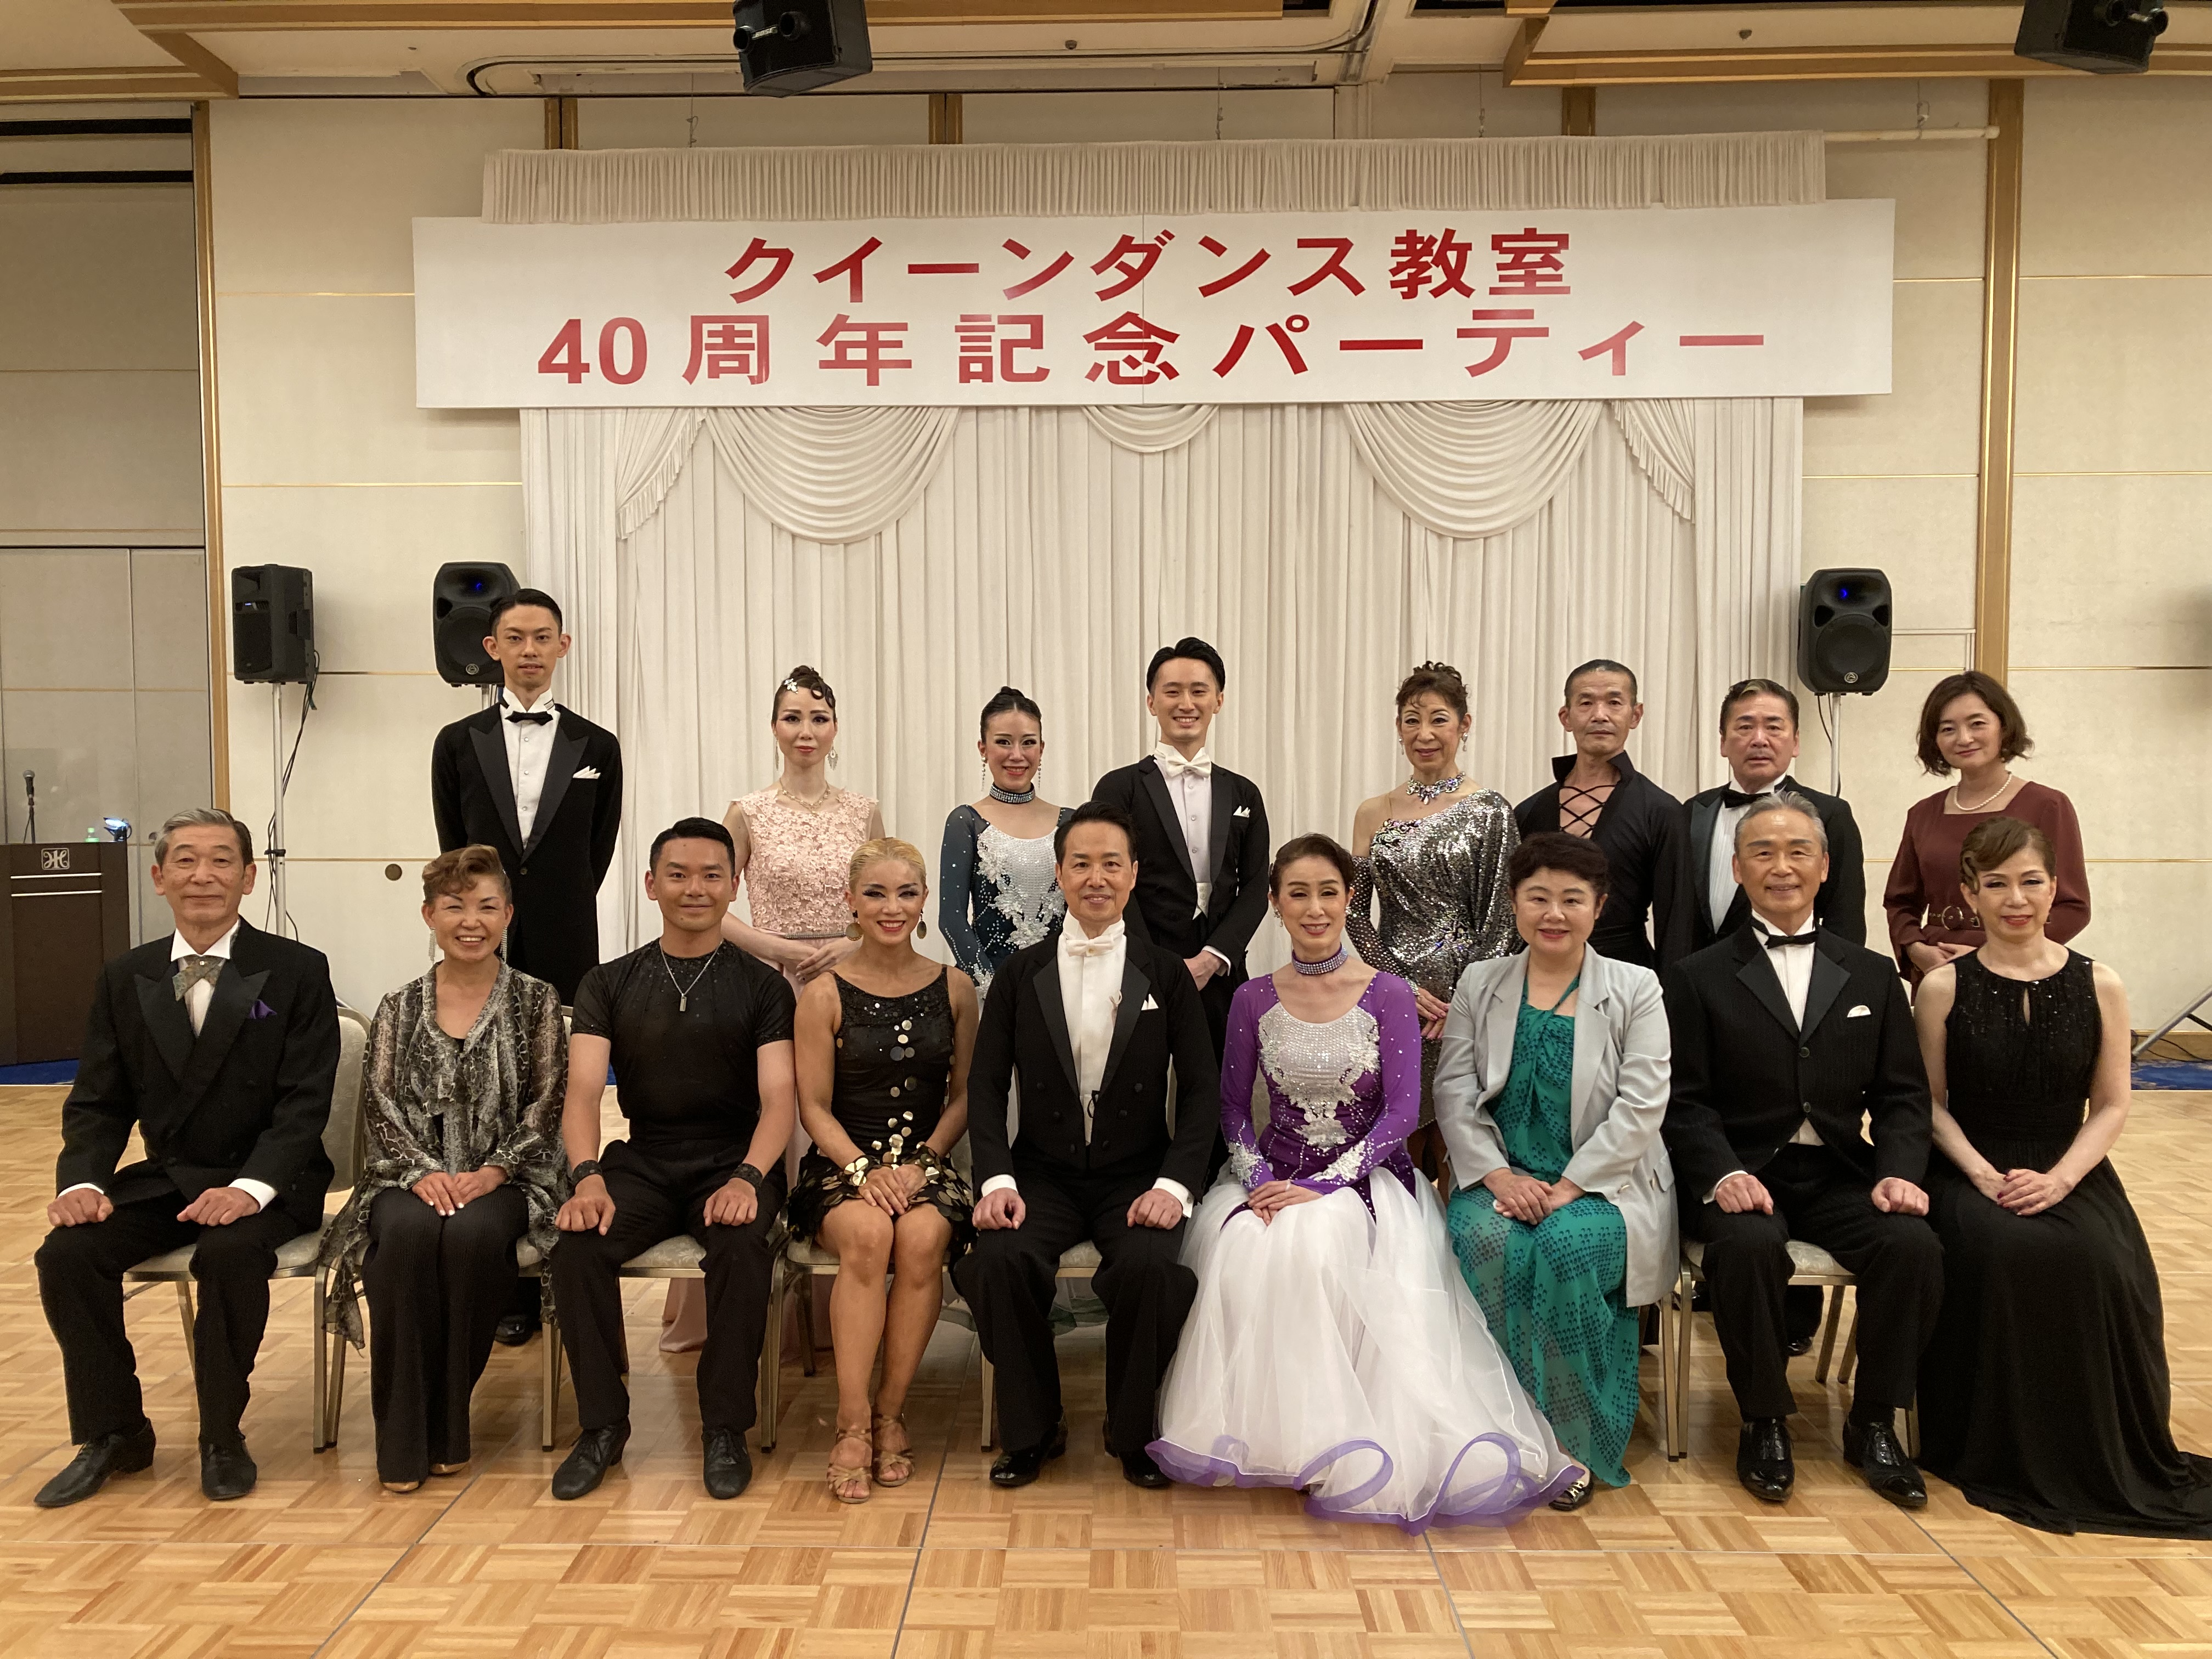 クイーンダンス教室40周年記念パーティー